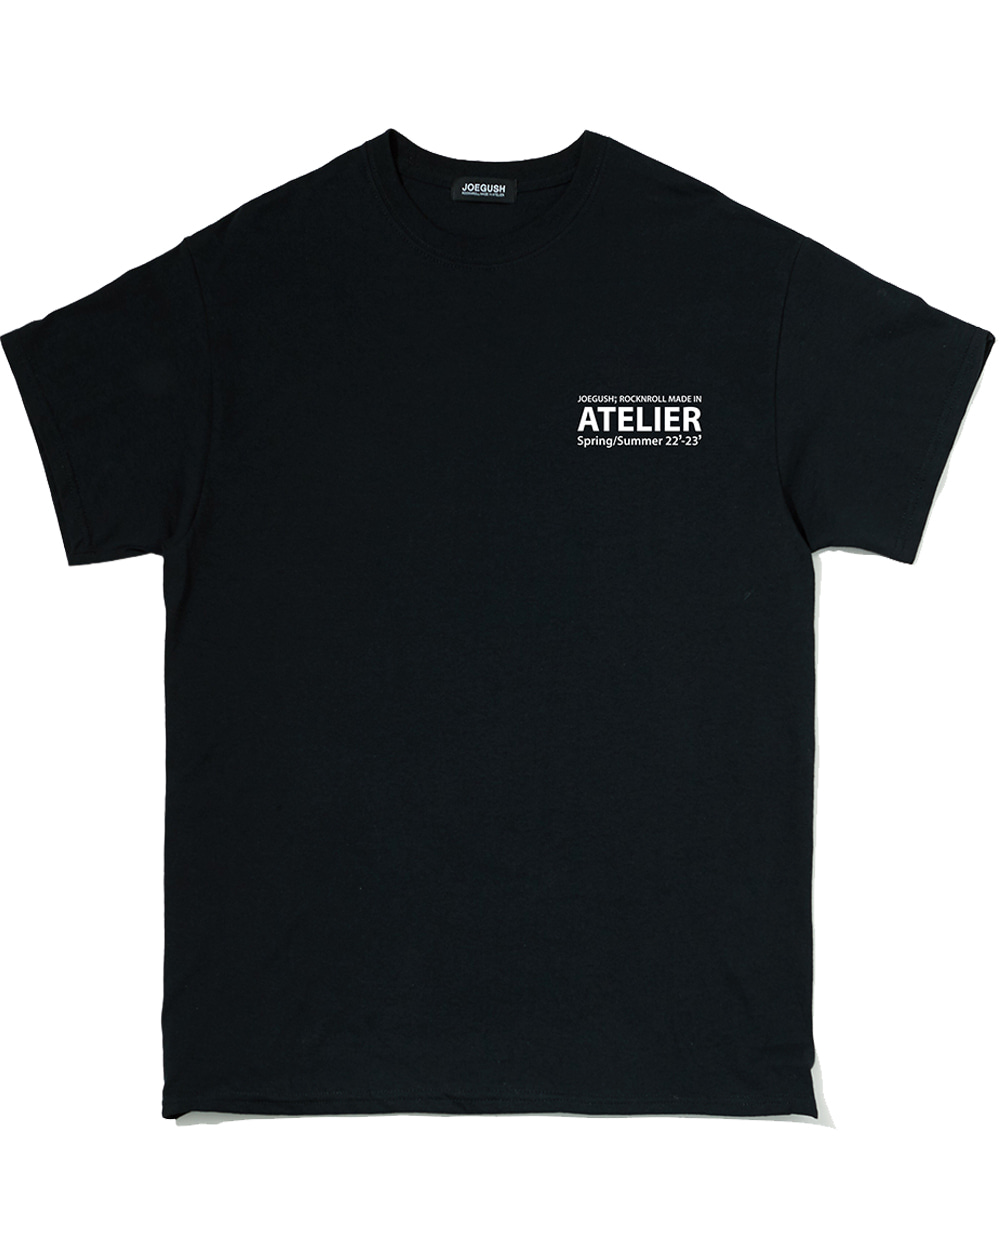 조거쉬 Atelier T-shirt (Black)